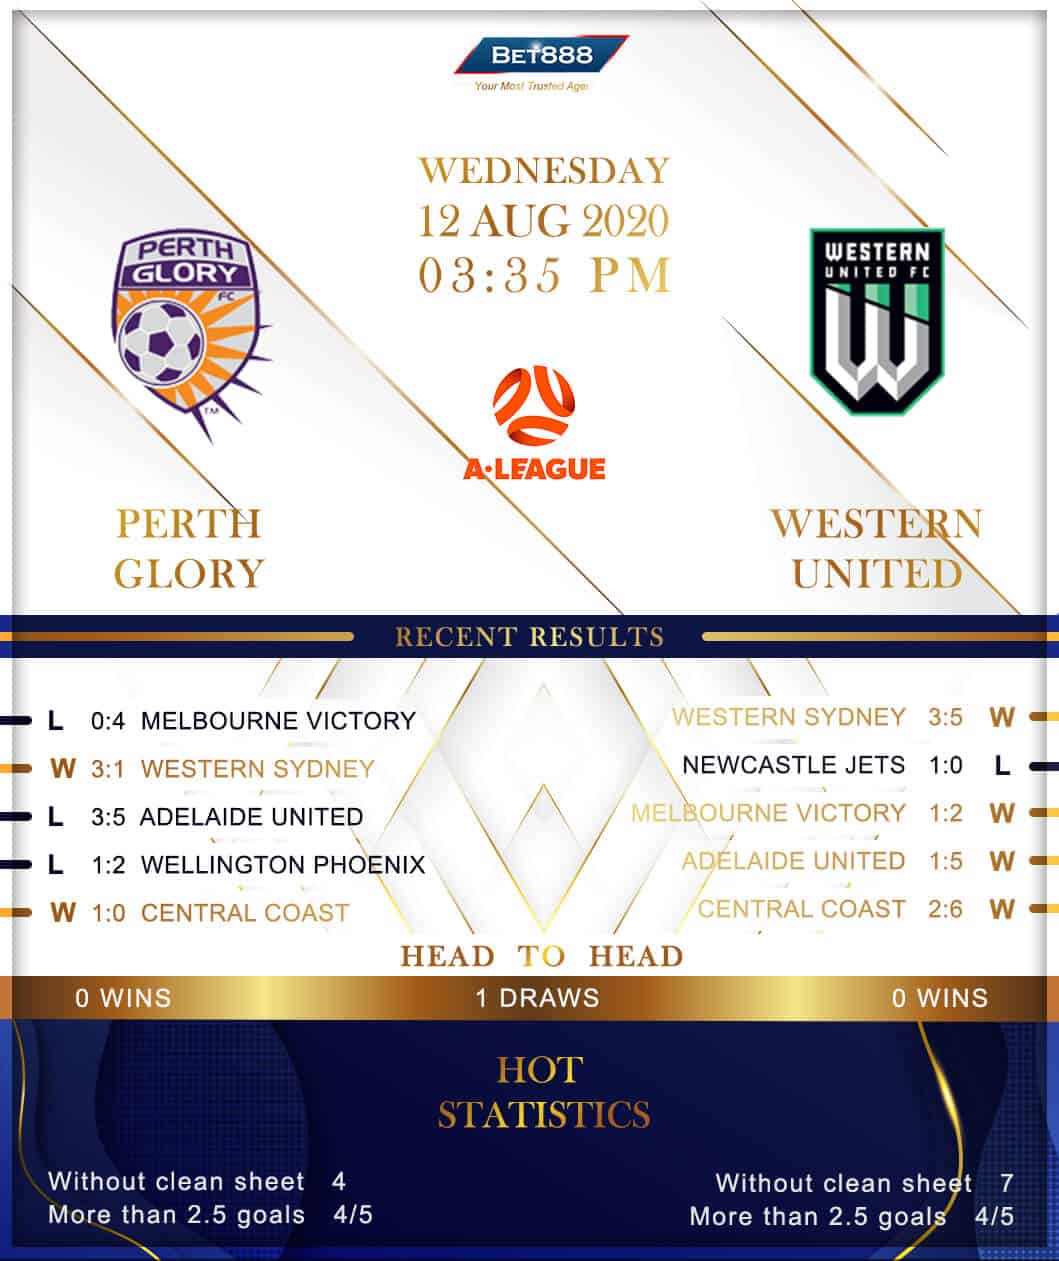 Perth Glory vs Western United 12/08/20